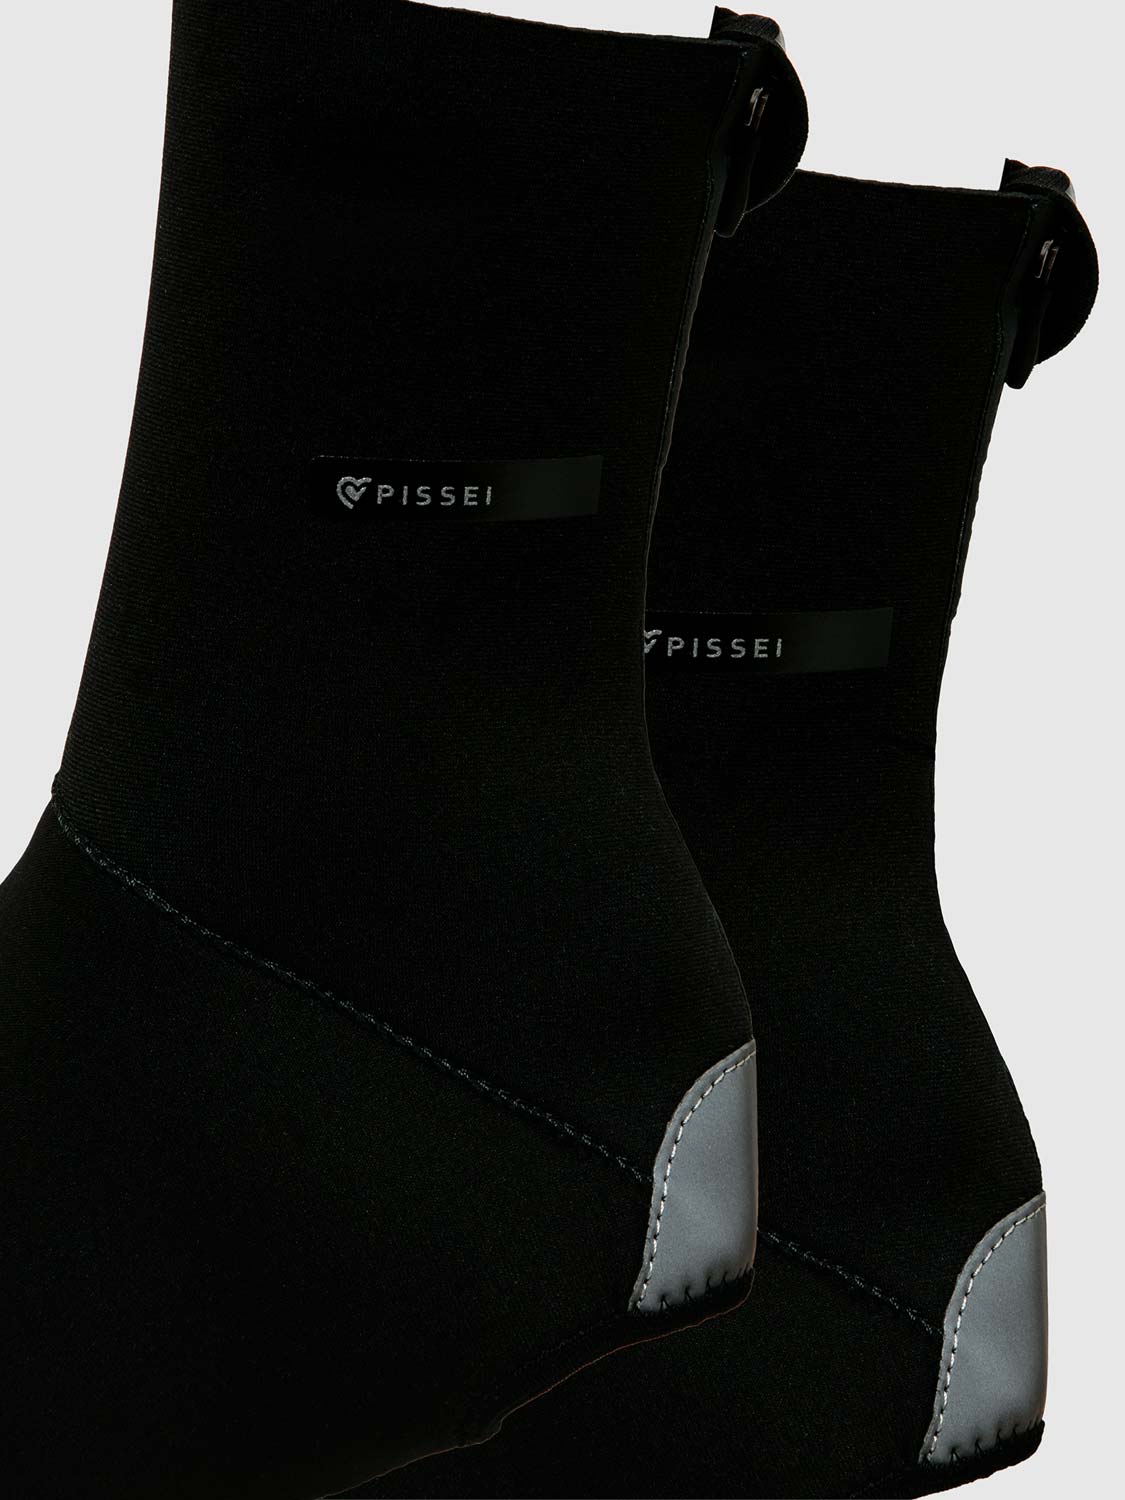 Pissei Izoard shoe cover 